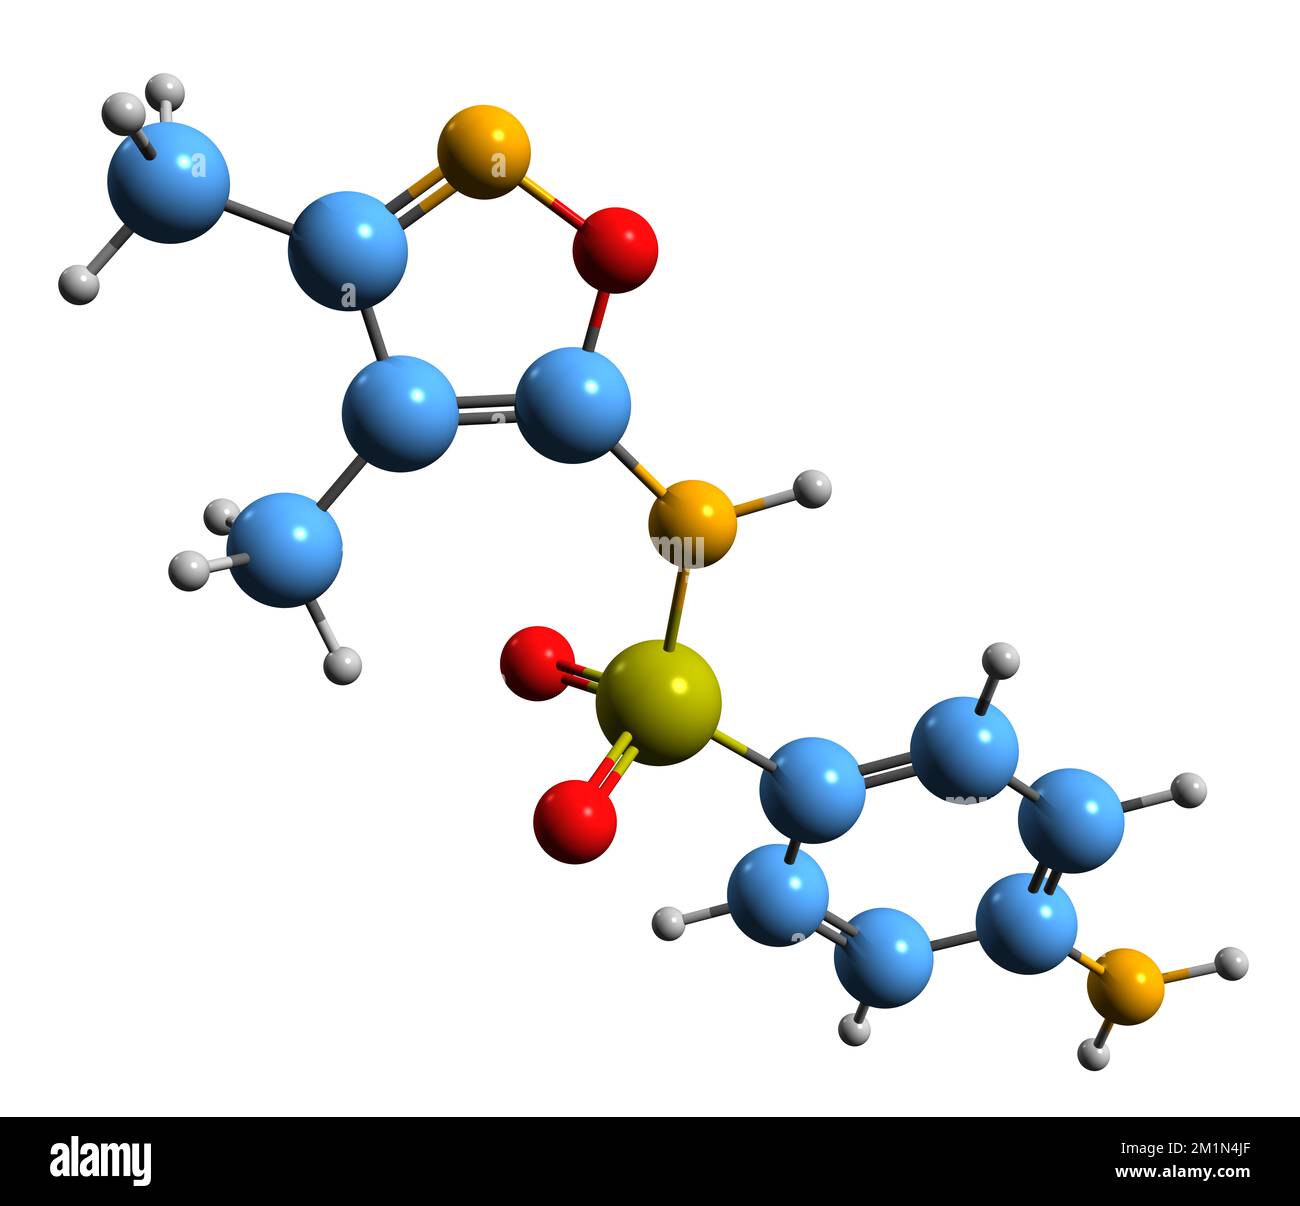 3D-Bild der Sulfafurazol-Skelettformel - molekularchemische Struktur des auf weißem Hintergrund isolierten Sulfonamids Stockfoto